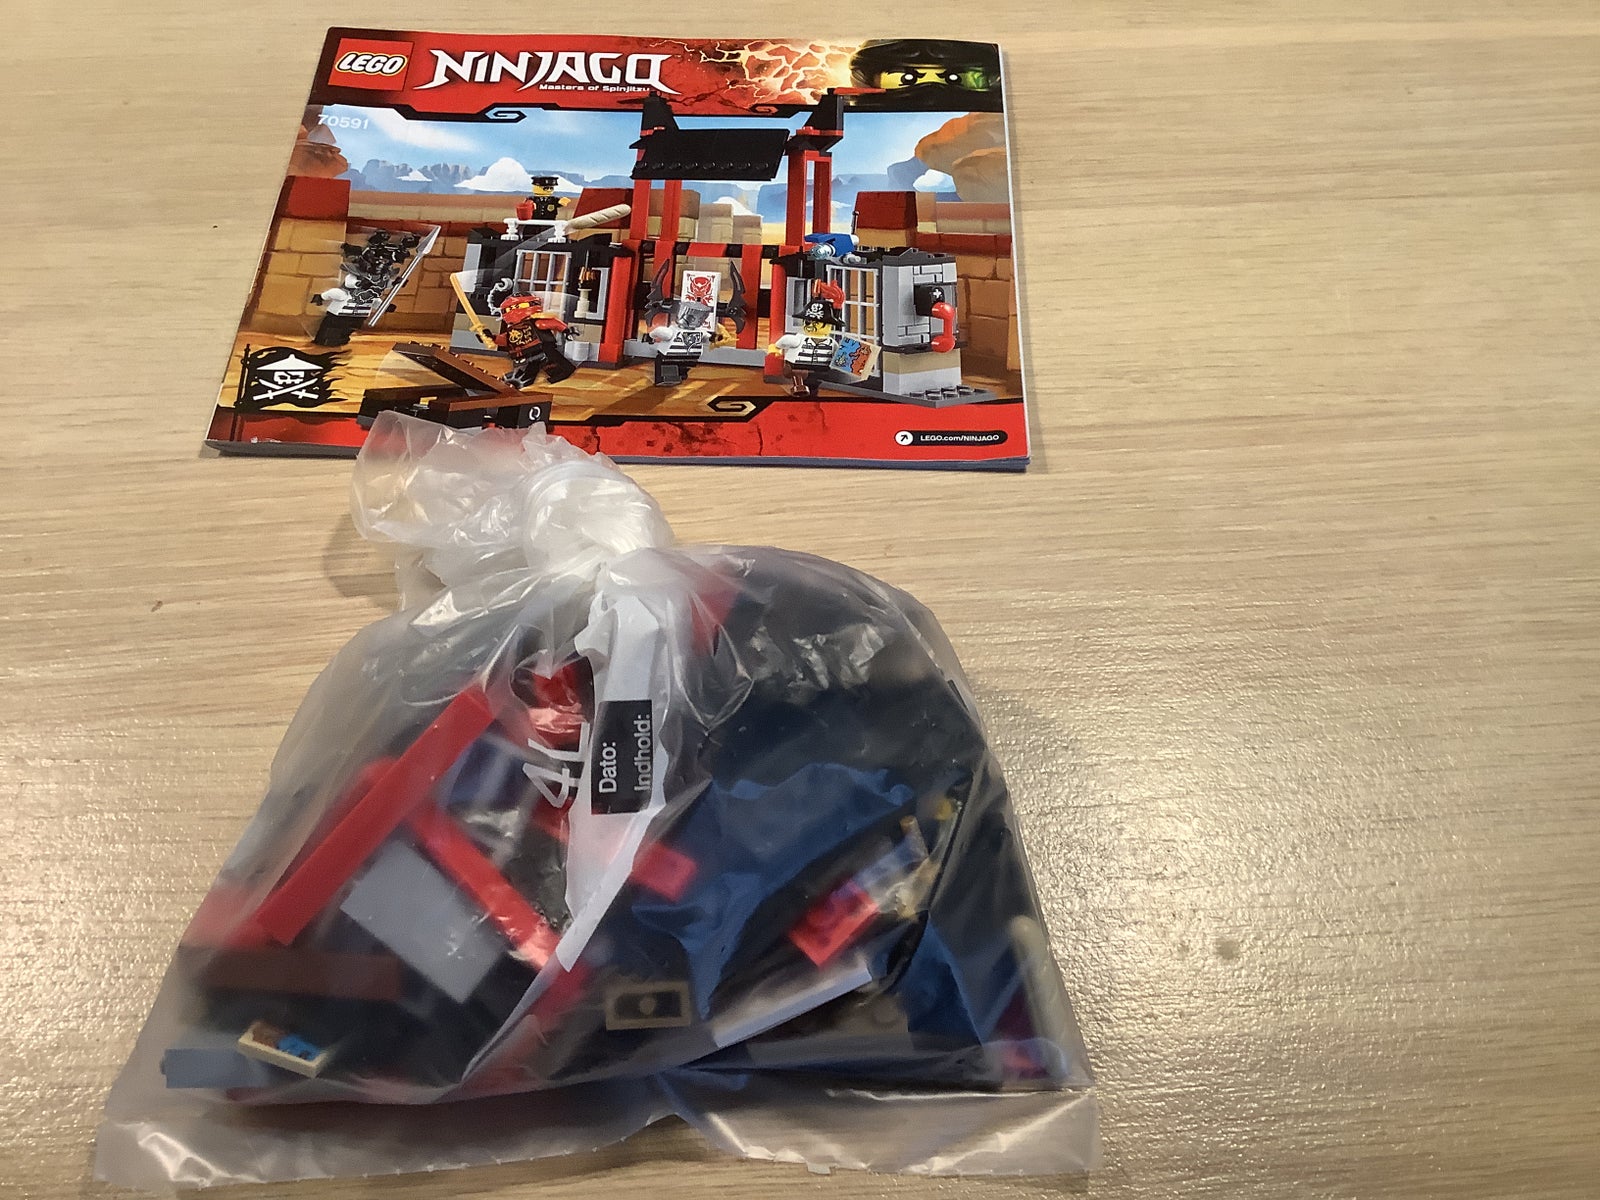 Lego Ninjago, 70591